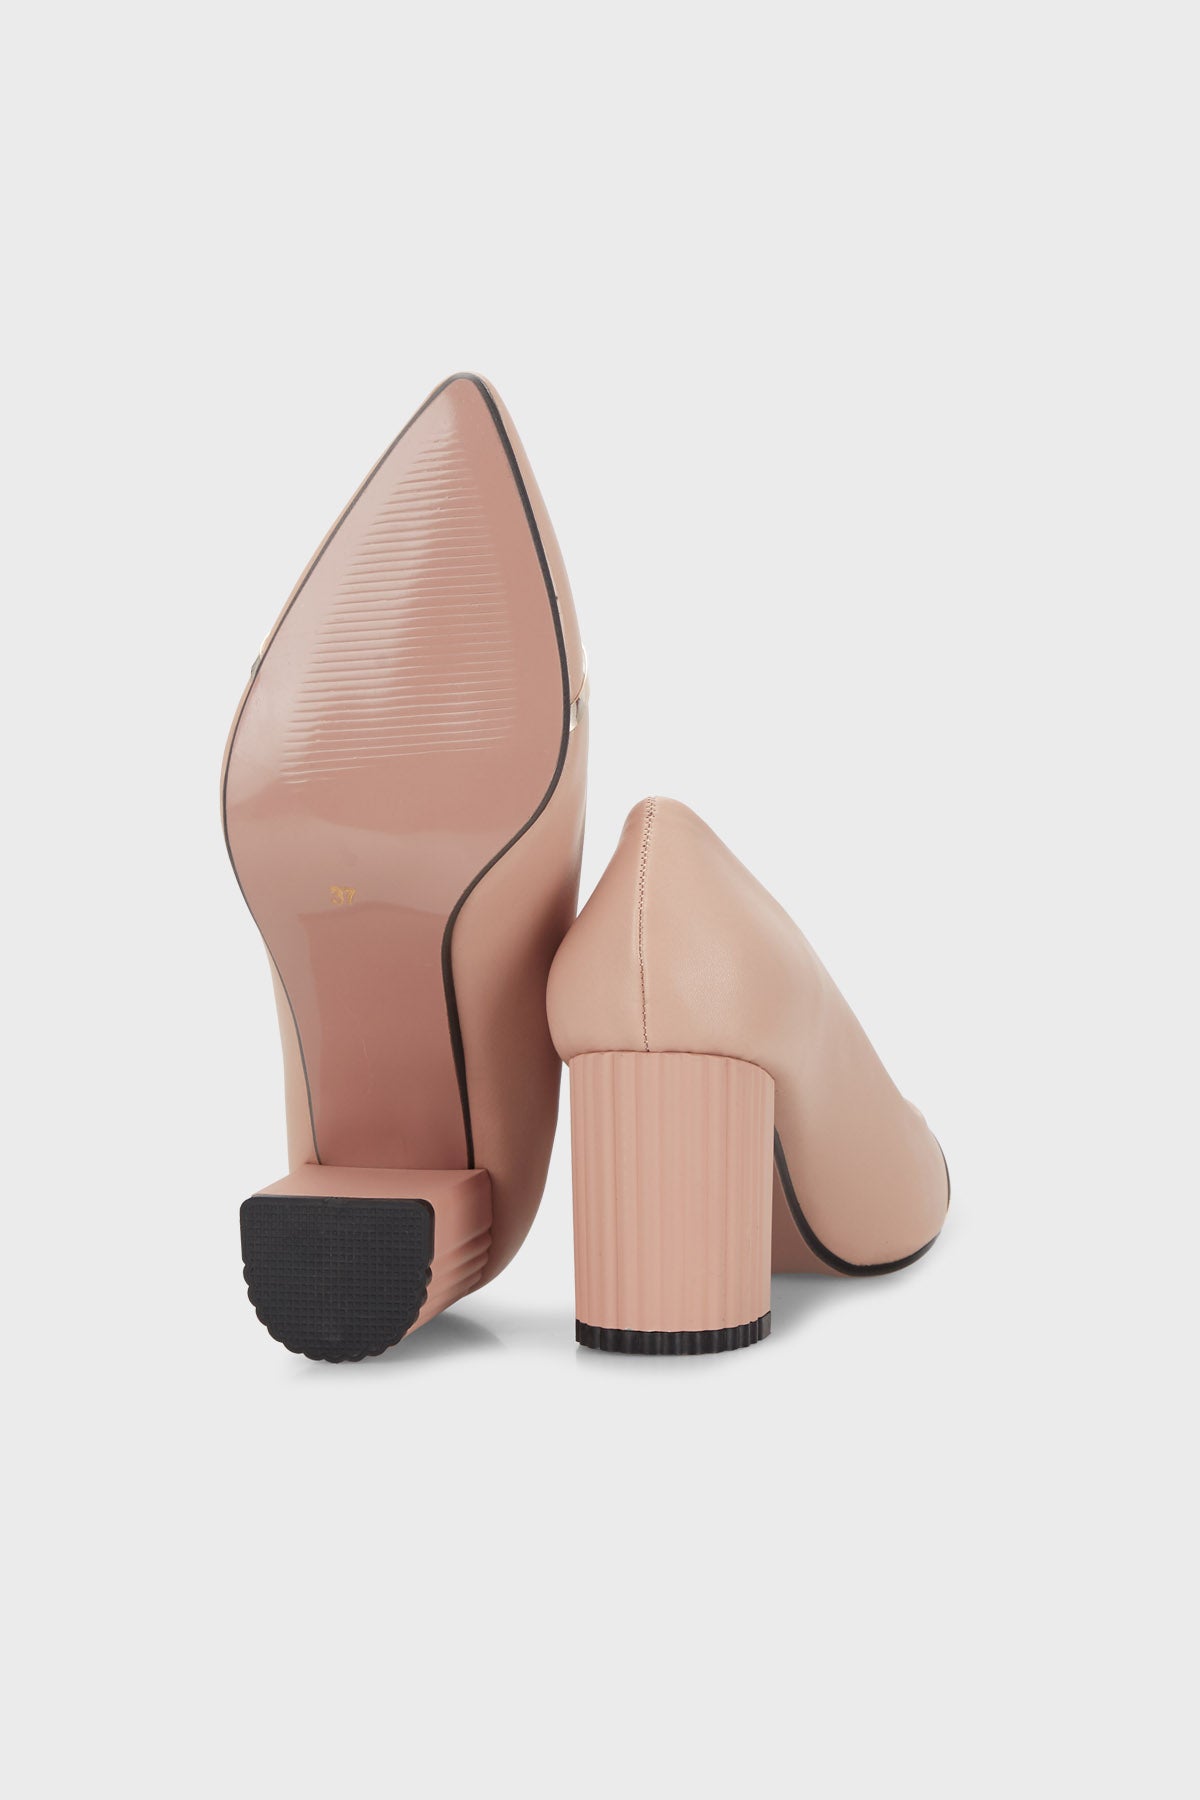 Pierre Cardin Topuklu Bayan Ayakkabı PC51203 KREM